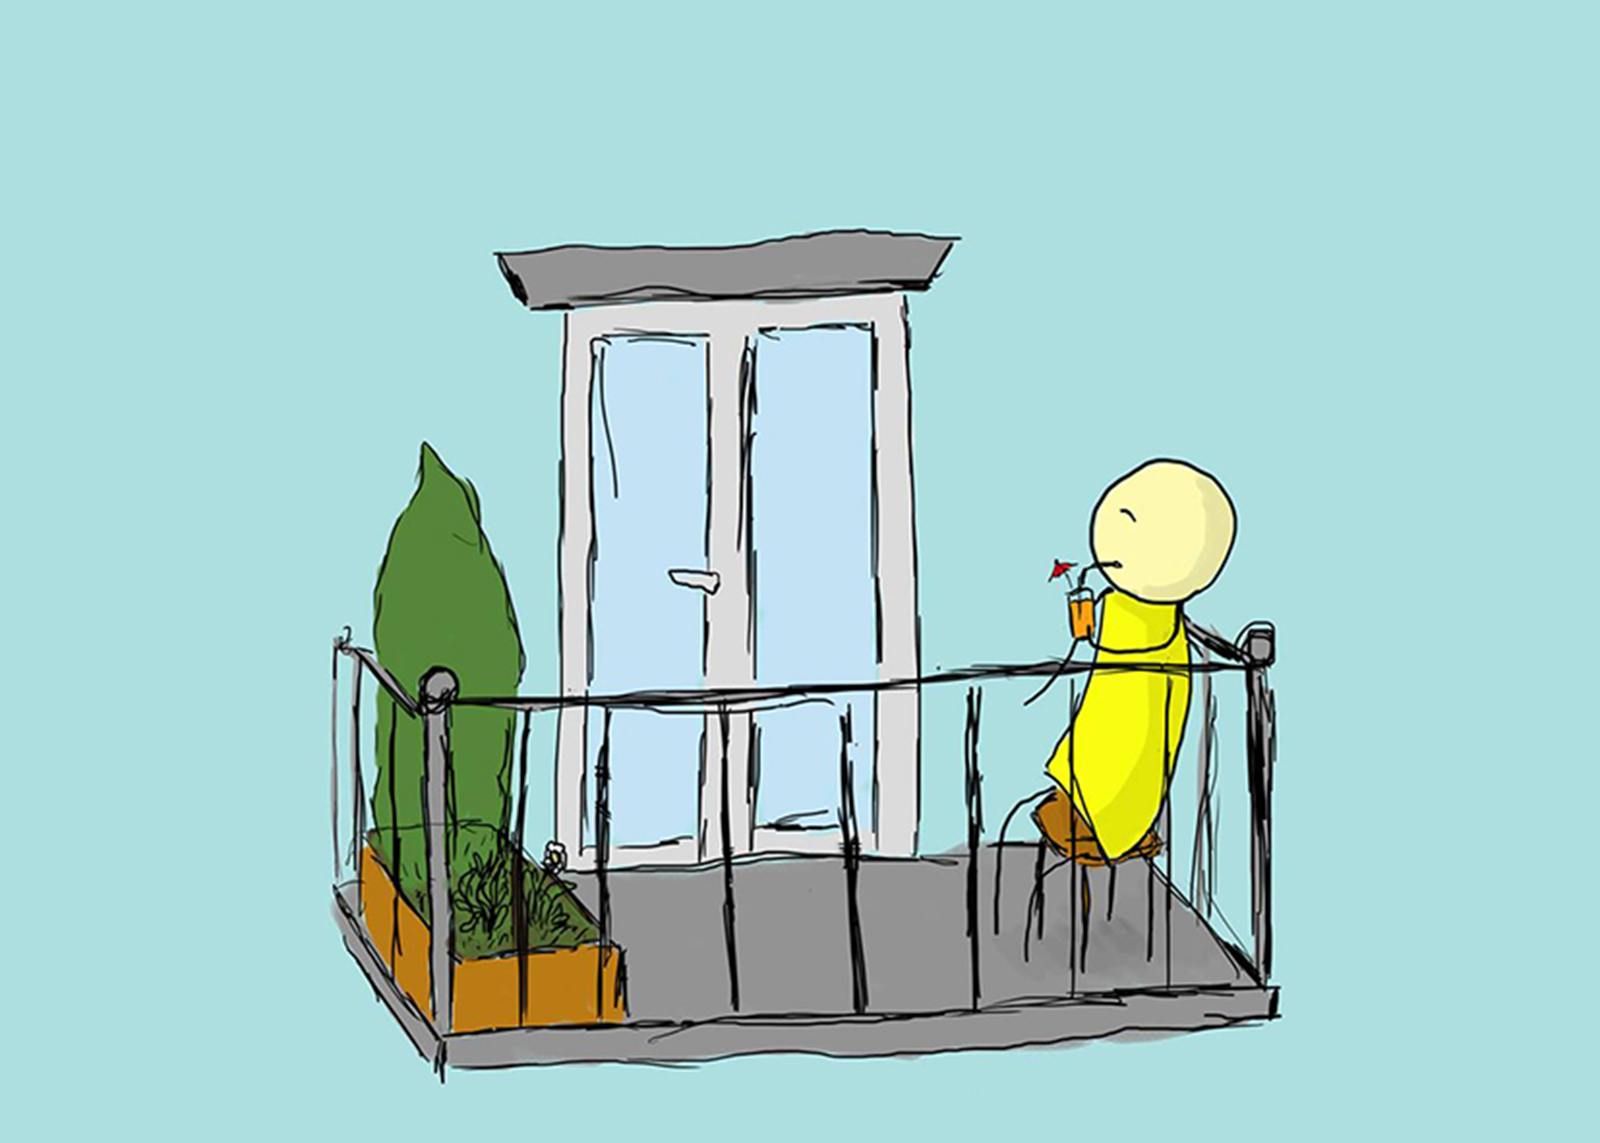 Das Comic zeigt einen Mann am Balkon